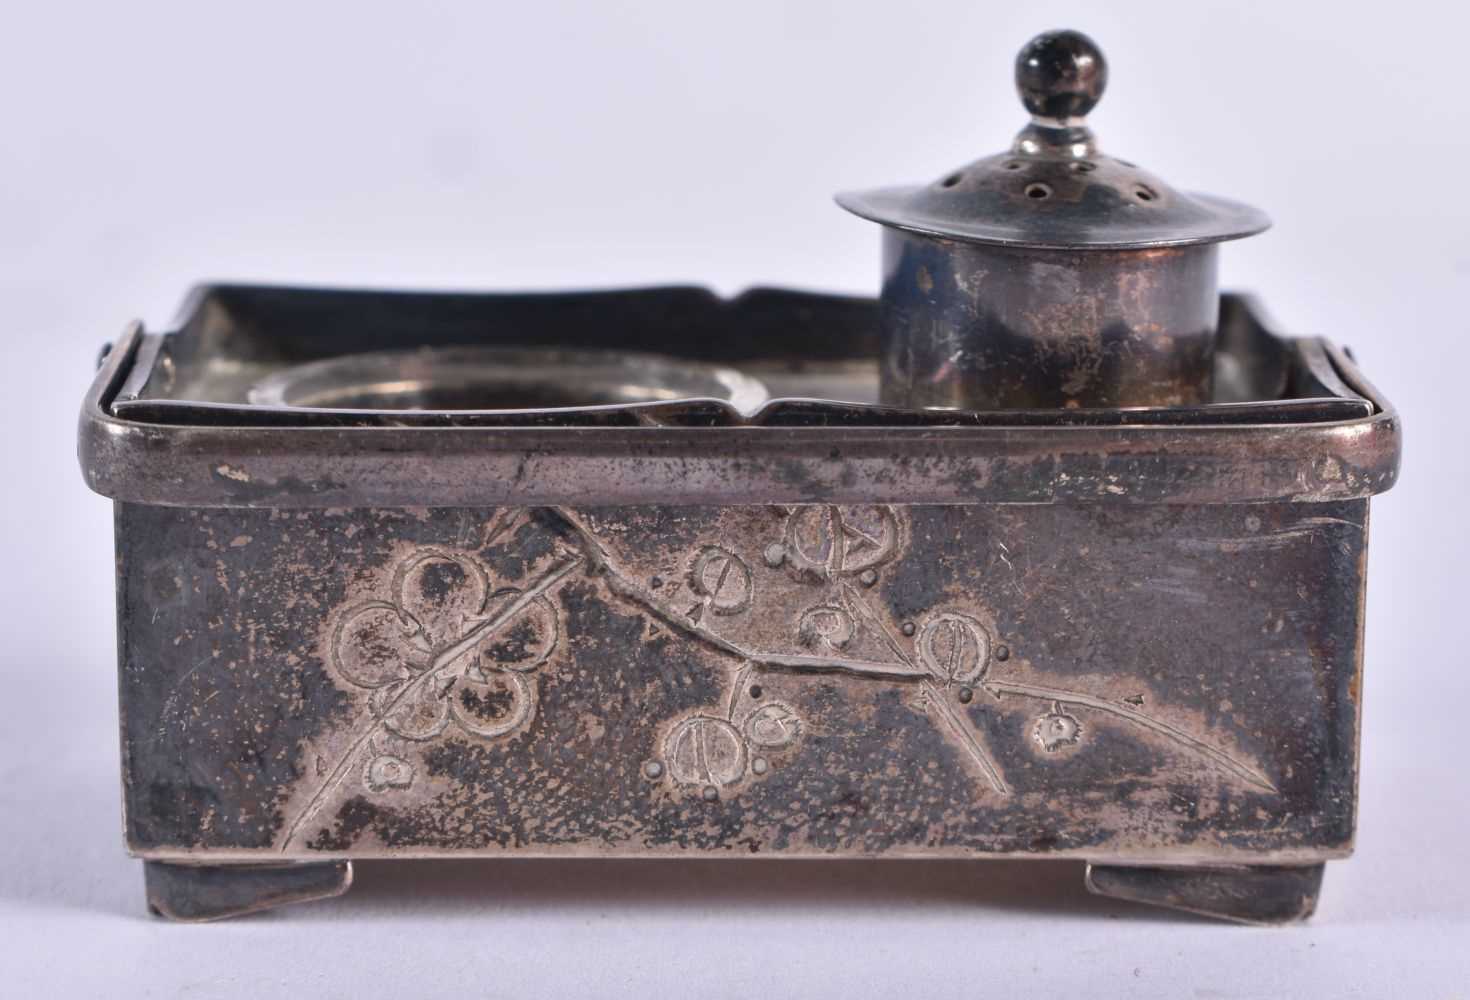 AN EARLY 20TH CENTURY JAPANESE MEIJI PERIOD SILVER CRUET. 48 grams. 5.5 cm x 3.5 cm.